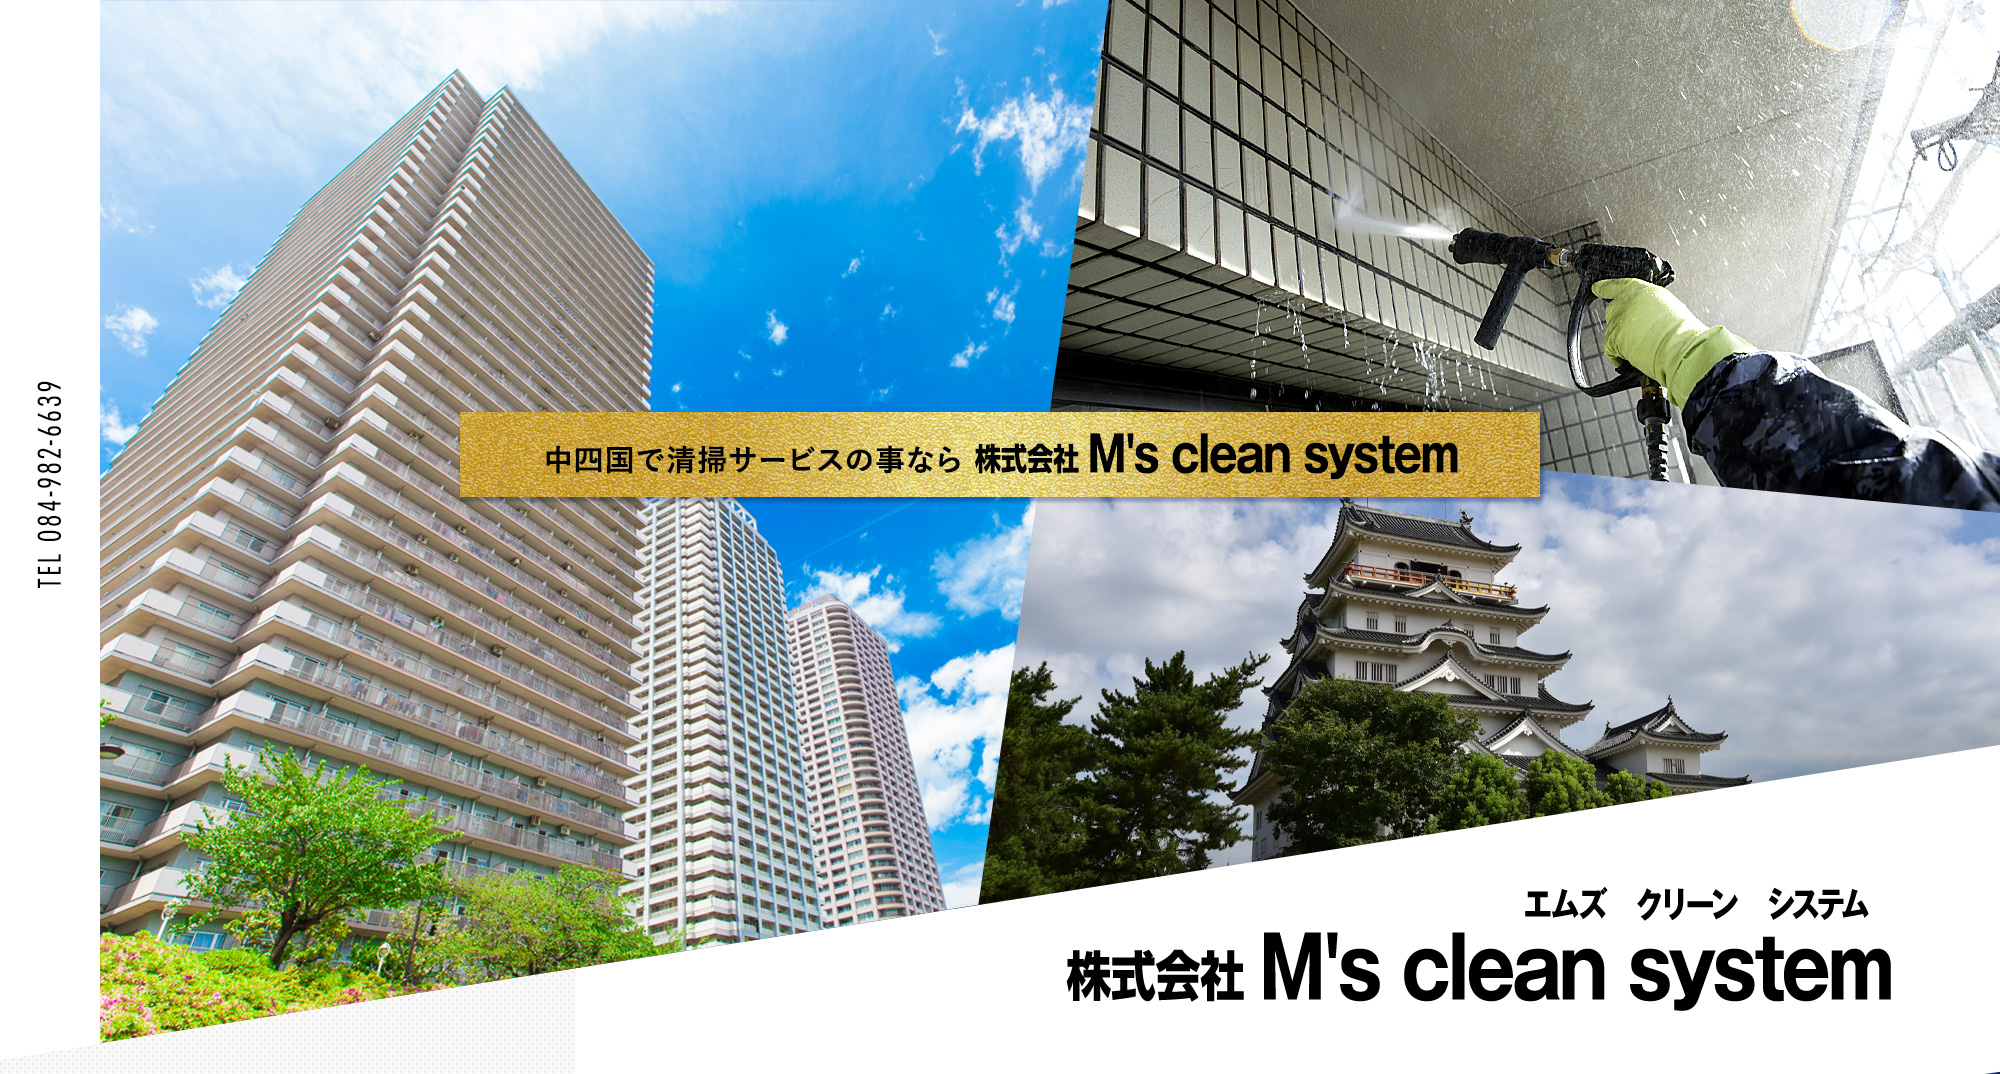 中四国で清掃サービスの事なら株式会社M's clean system